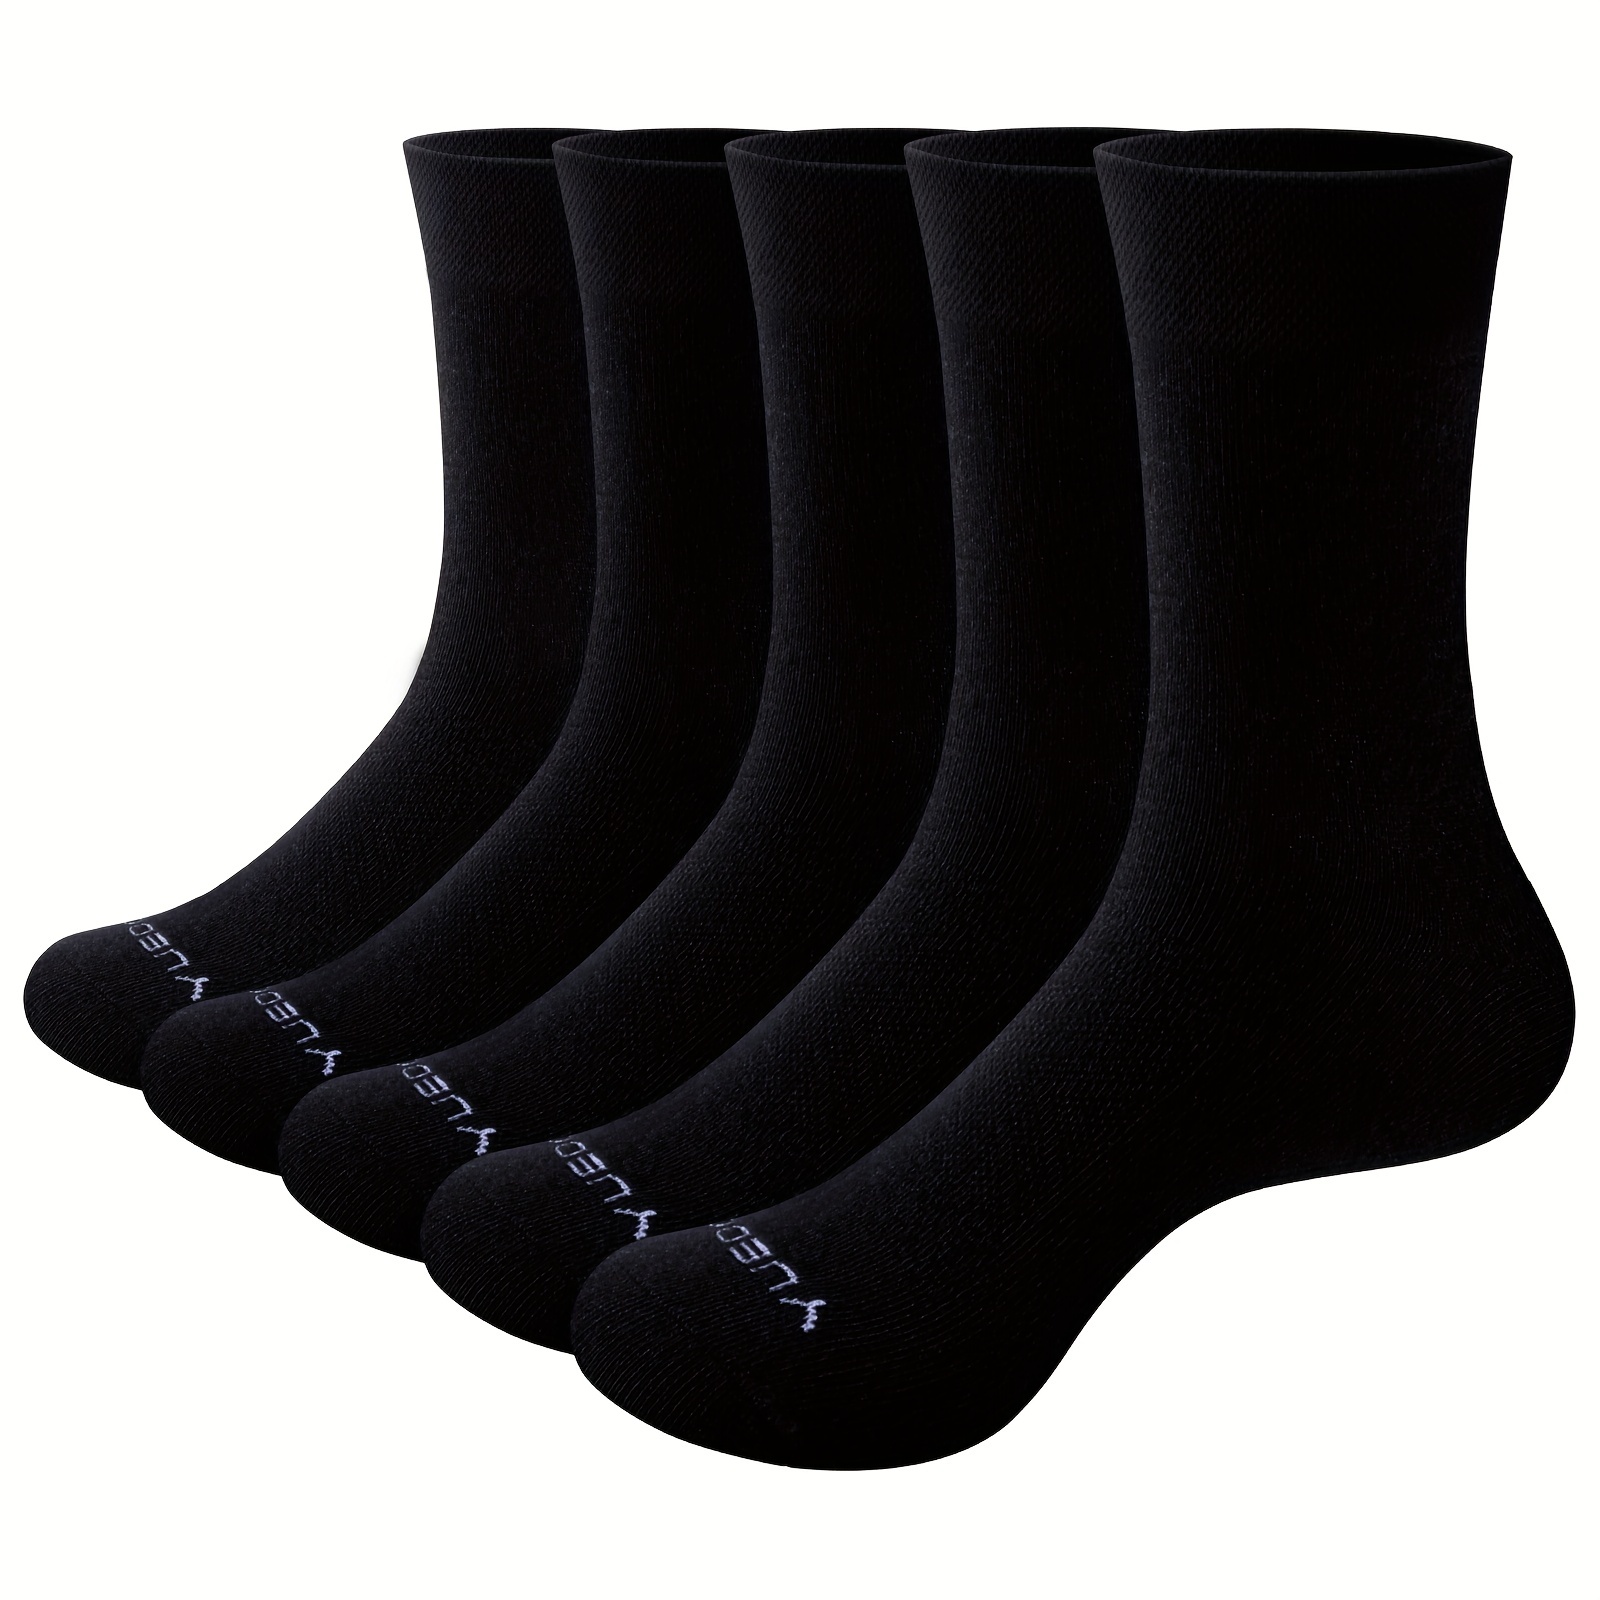 Calcetines Negros Clásicos 10 Pares, Hombres Mujeres Niños